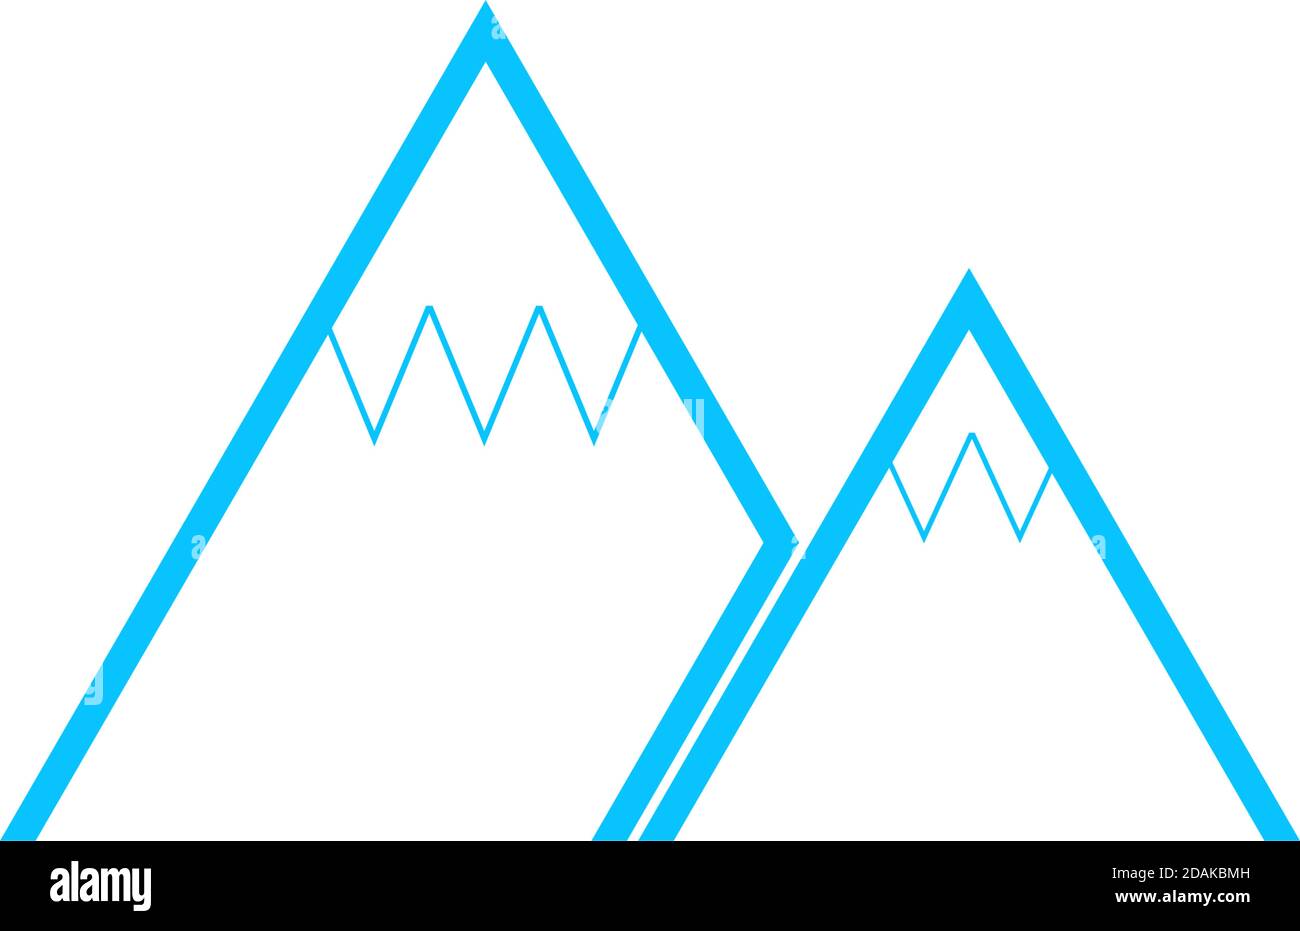 Bergikone flach. Blaues Piktogramm auf weißem Hintergrund. Symbol für Vektorgrafik Stock Vektor